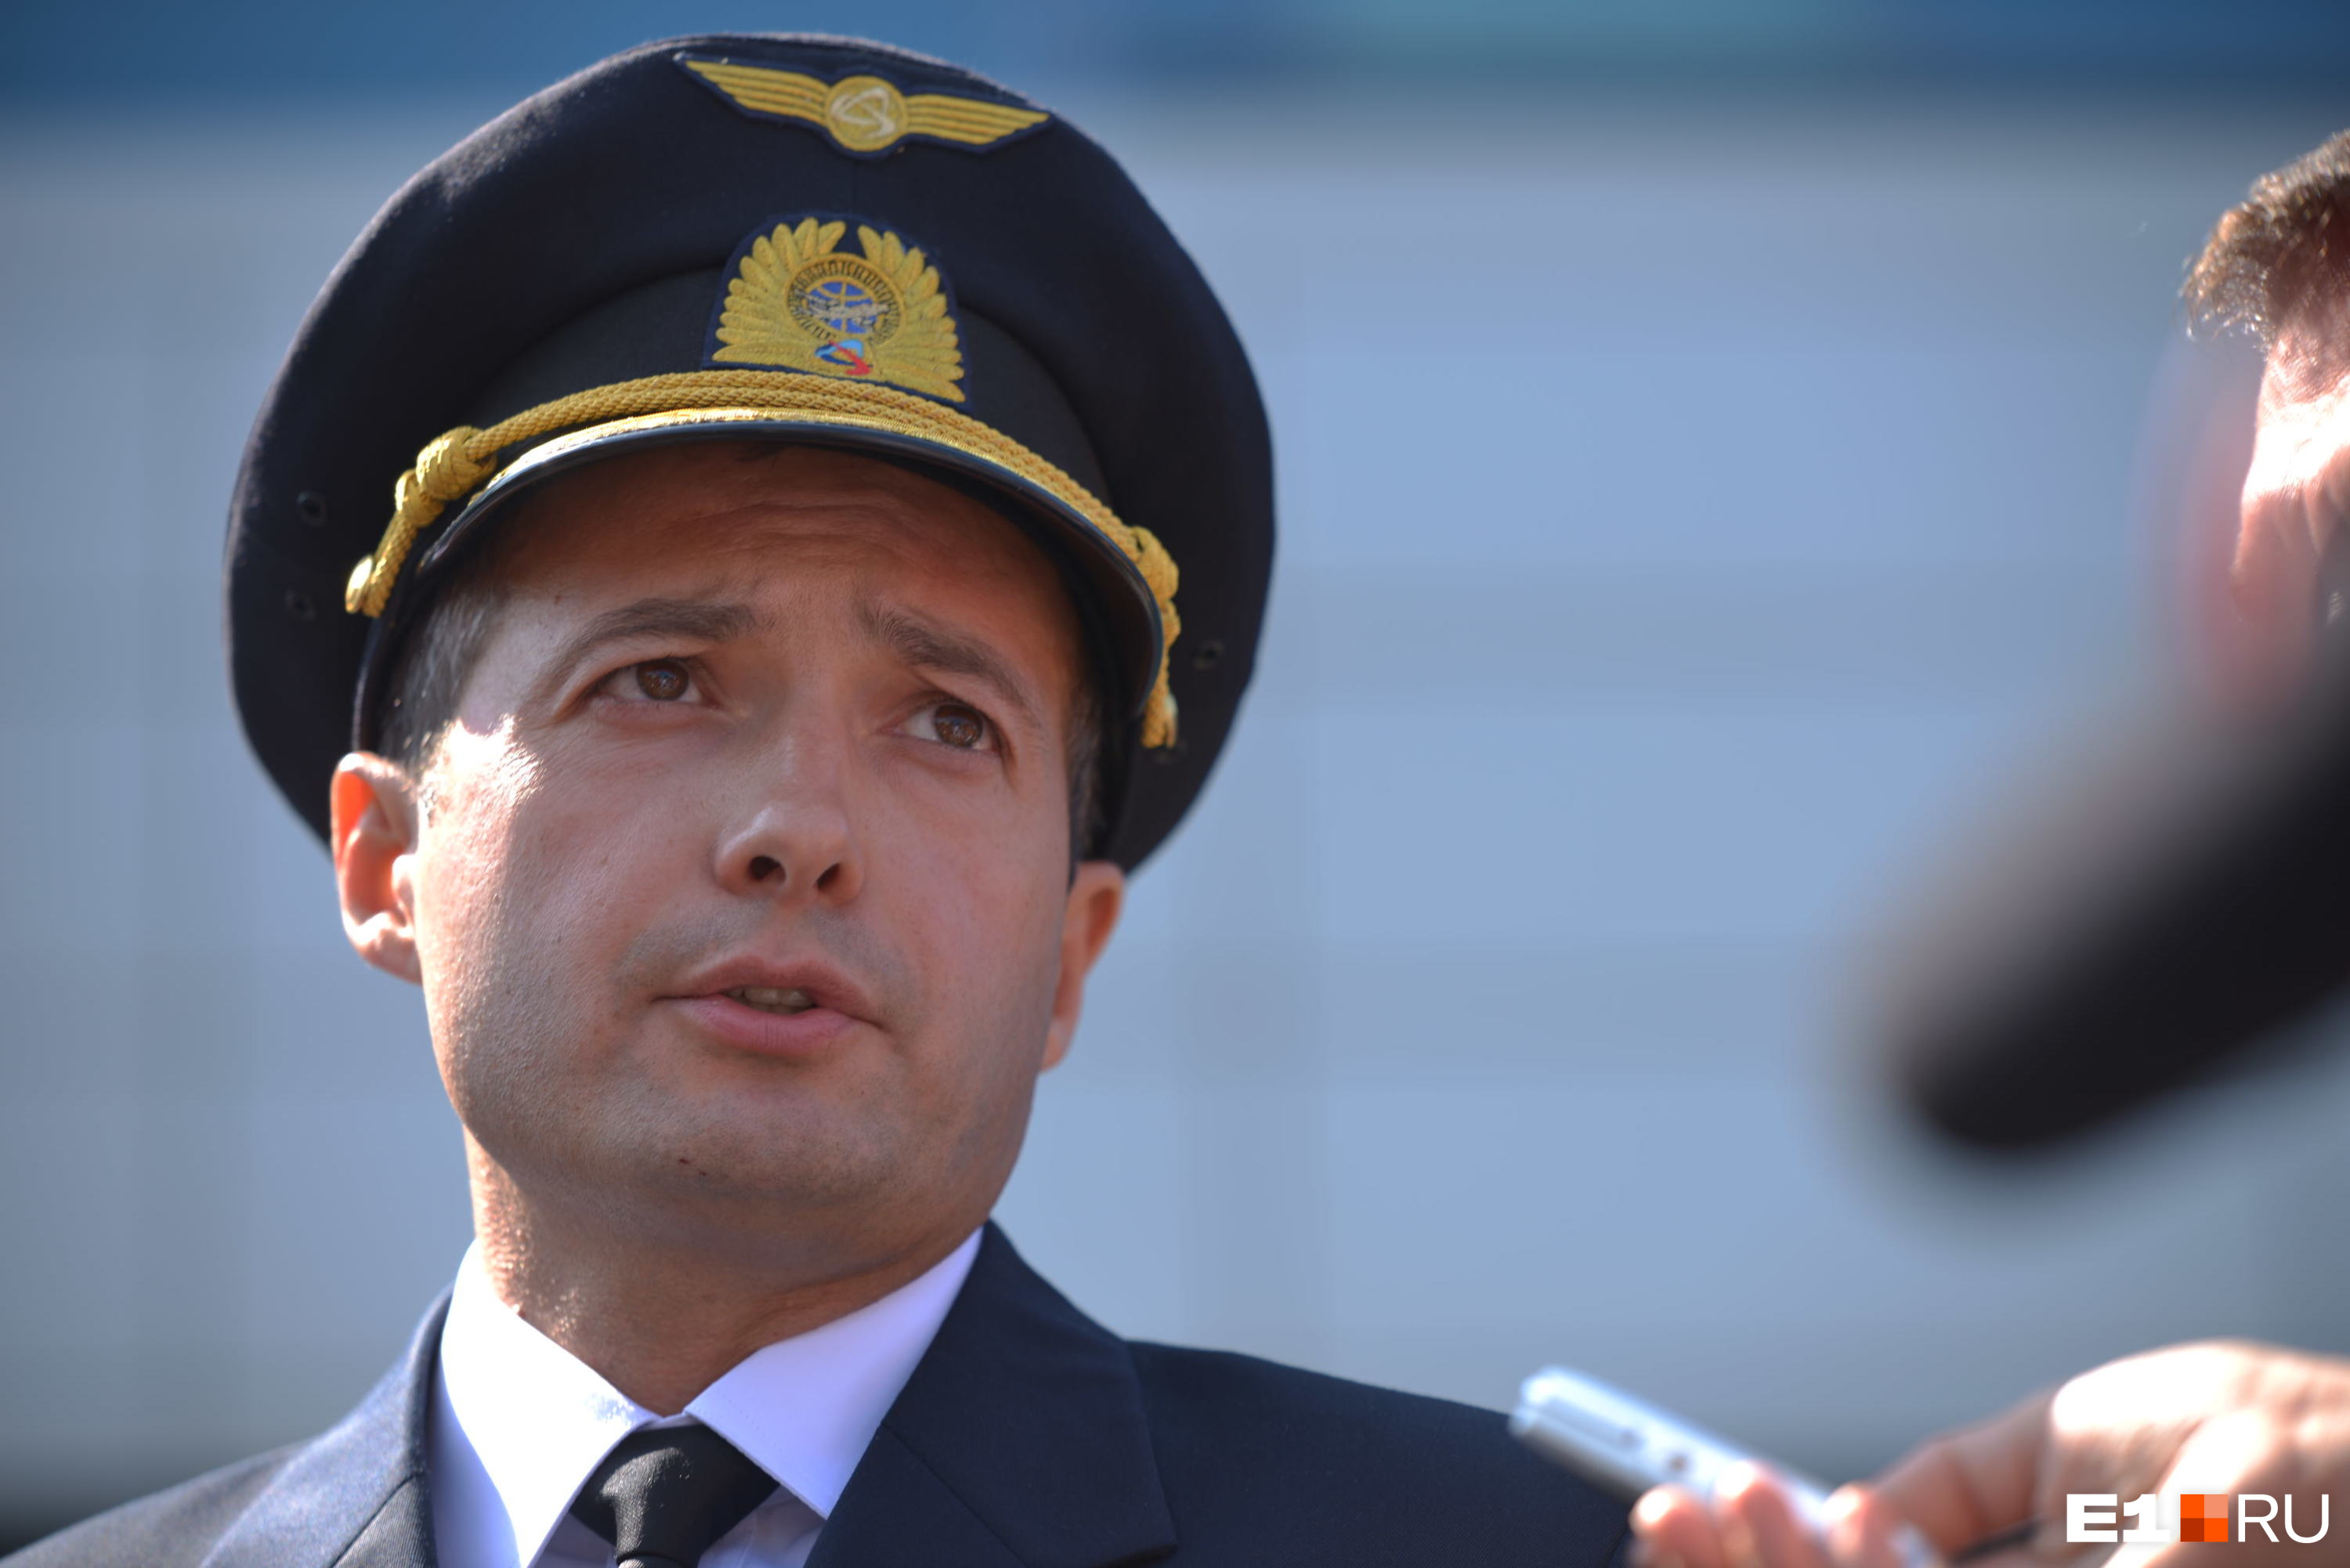 Пилот Дамир Юсупов впоследствии получил звезду Героя России